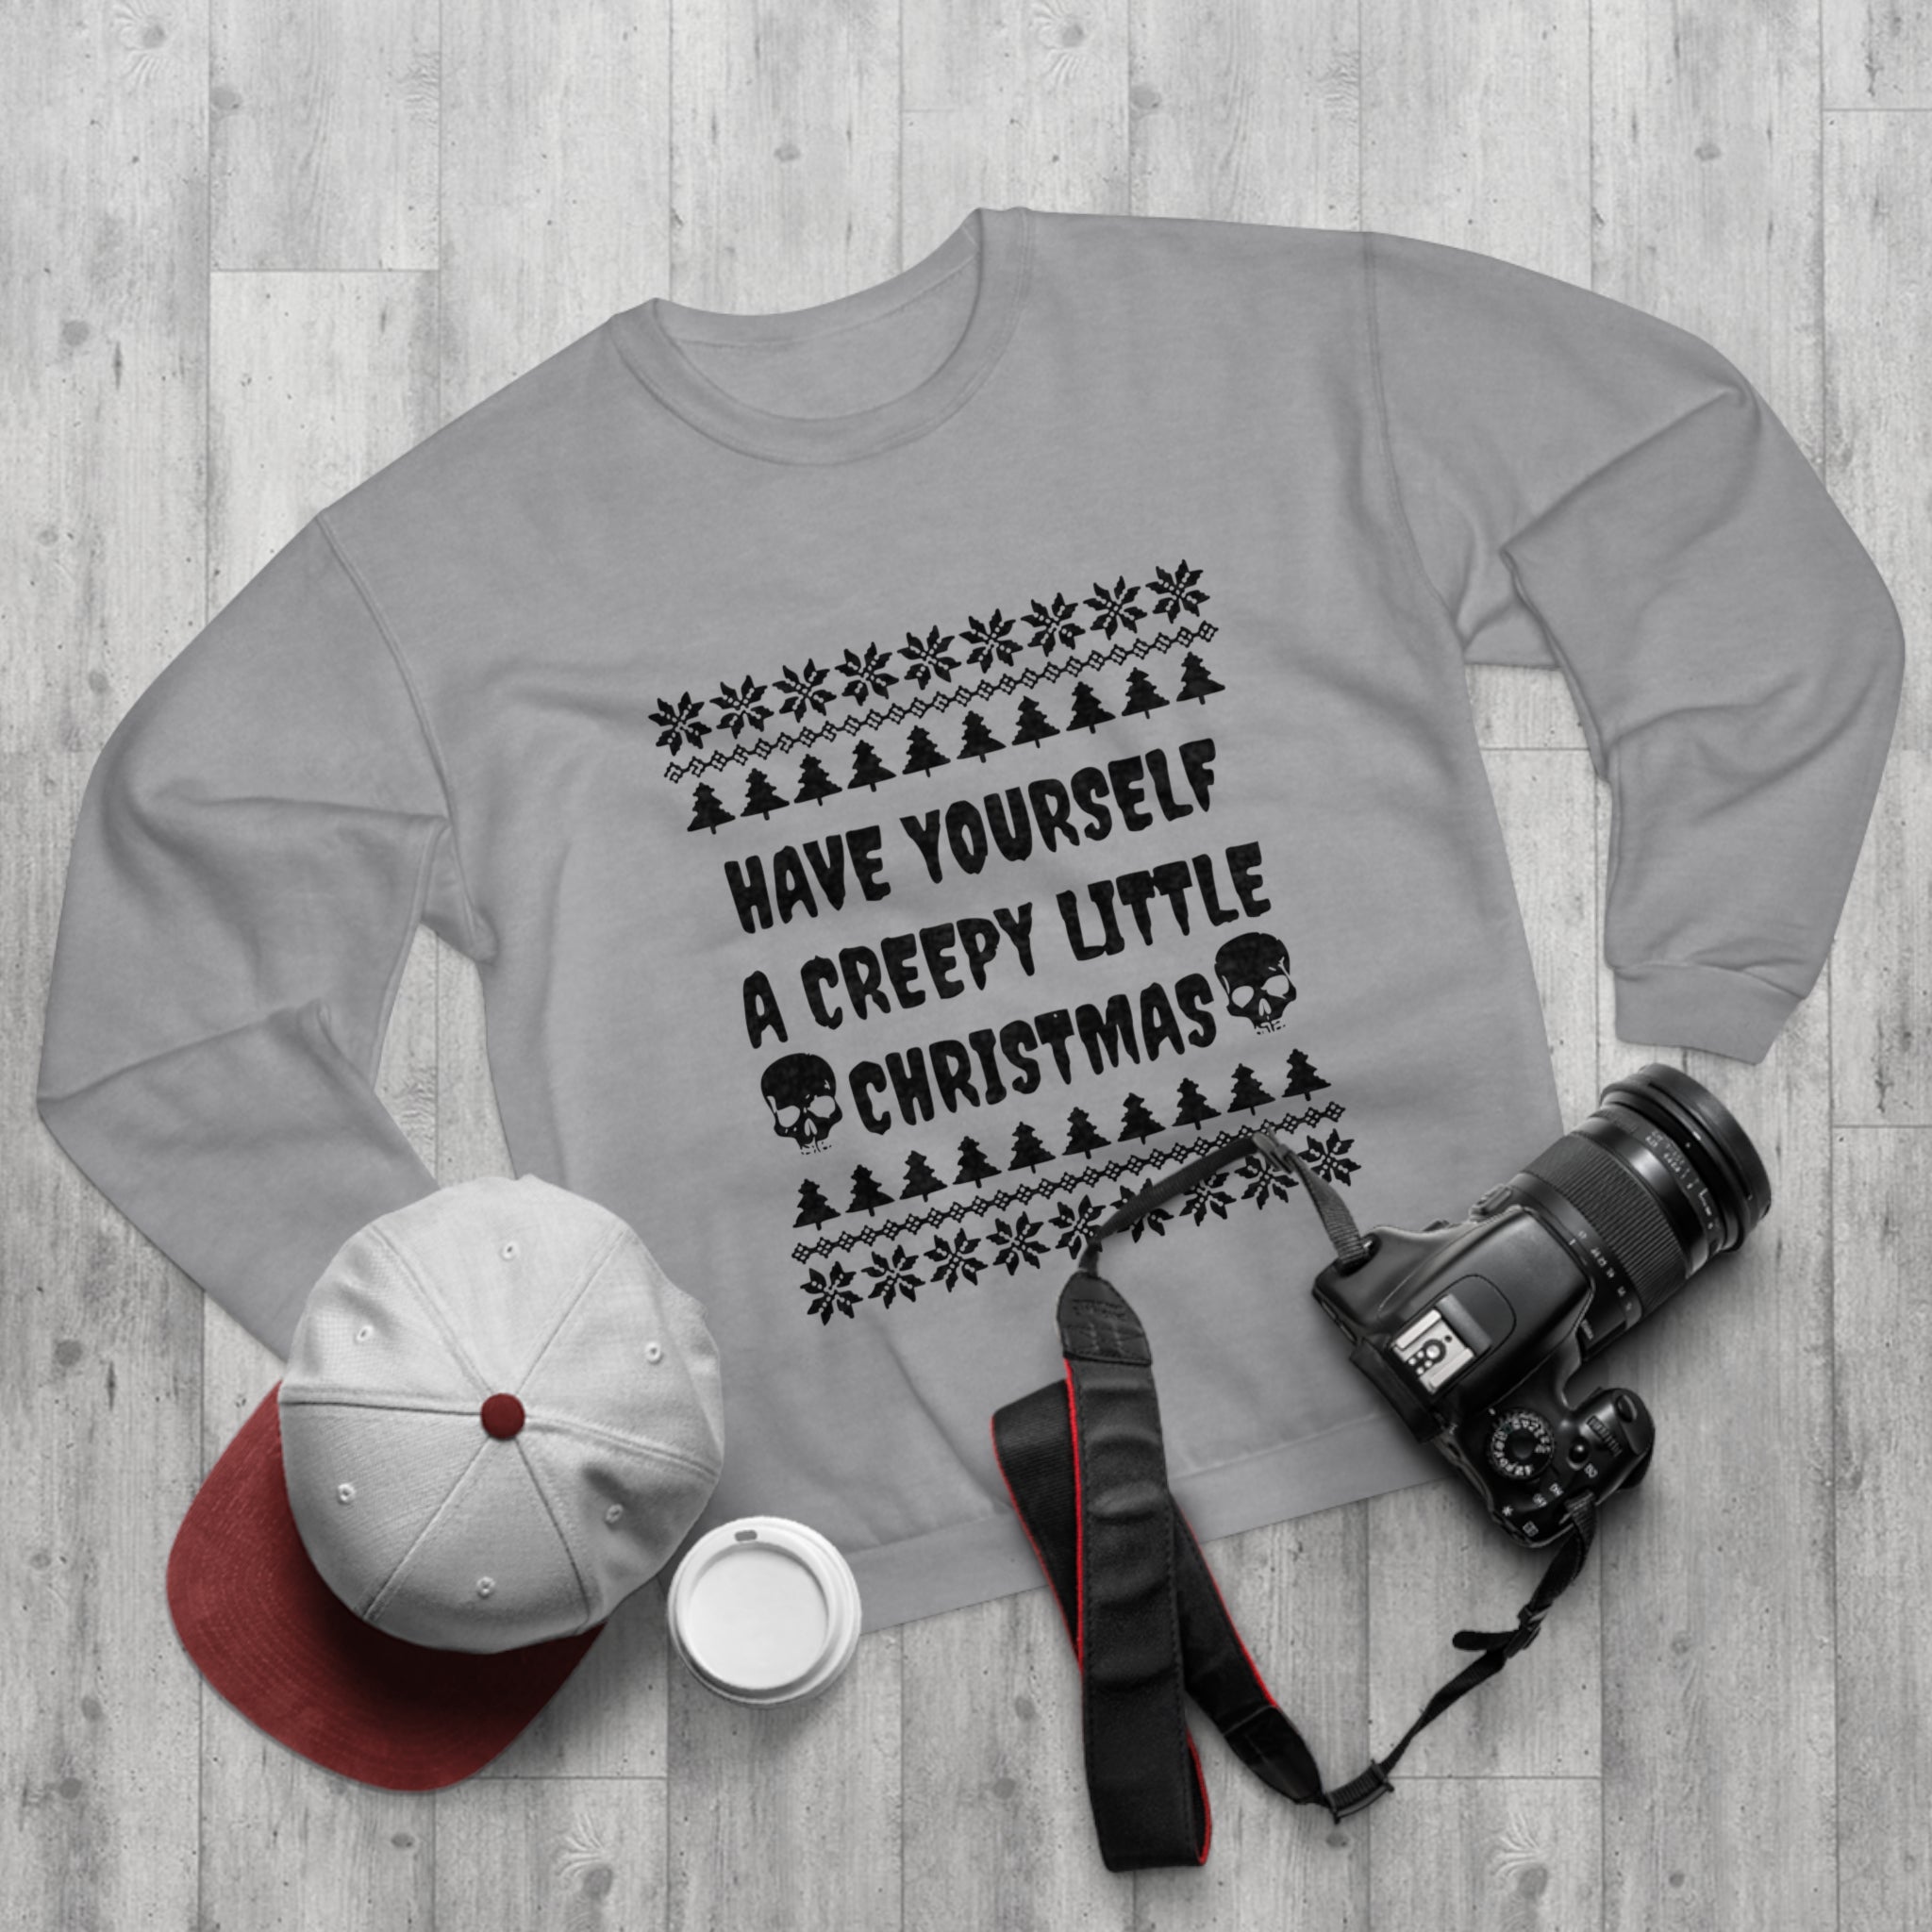 Gruseliges kleines Weihnachts-Sweatshirt 